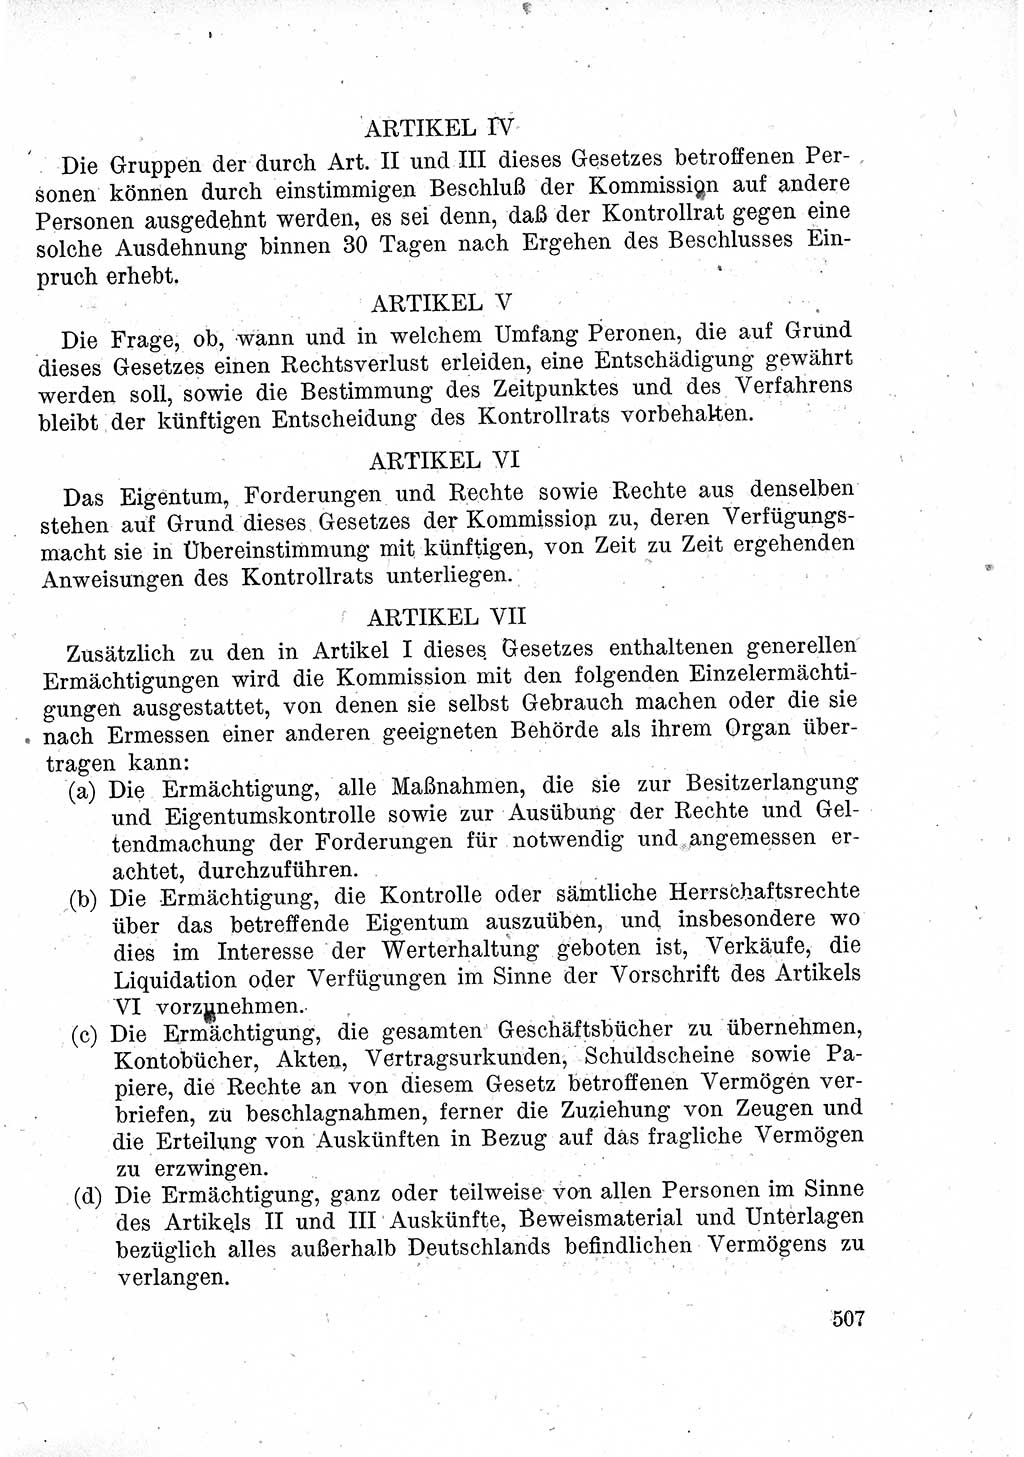 Das Recht der Besatzungsmacht (Deutschland), Proklamationen, Deklerationen, Verordnungen, Gesetze und Bekanntmachungen 1947, Seite 507 (R. Bes. Dtl. 1947, S. 507)